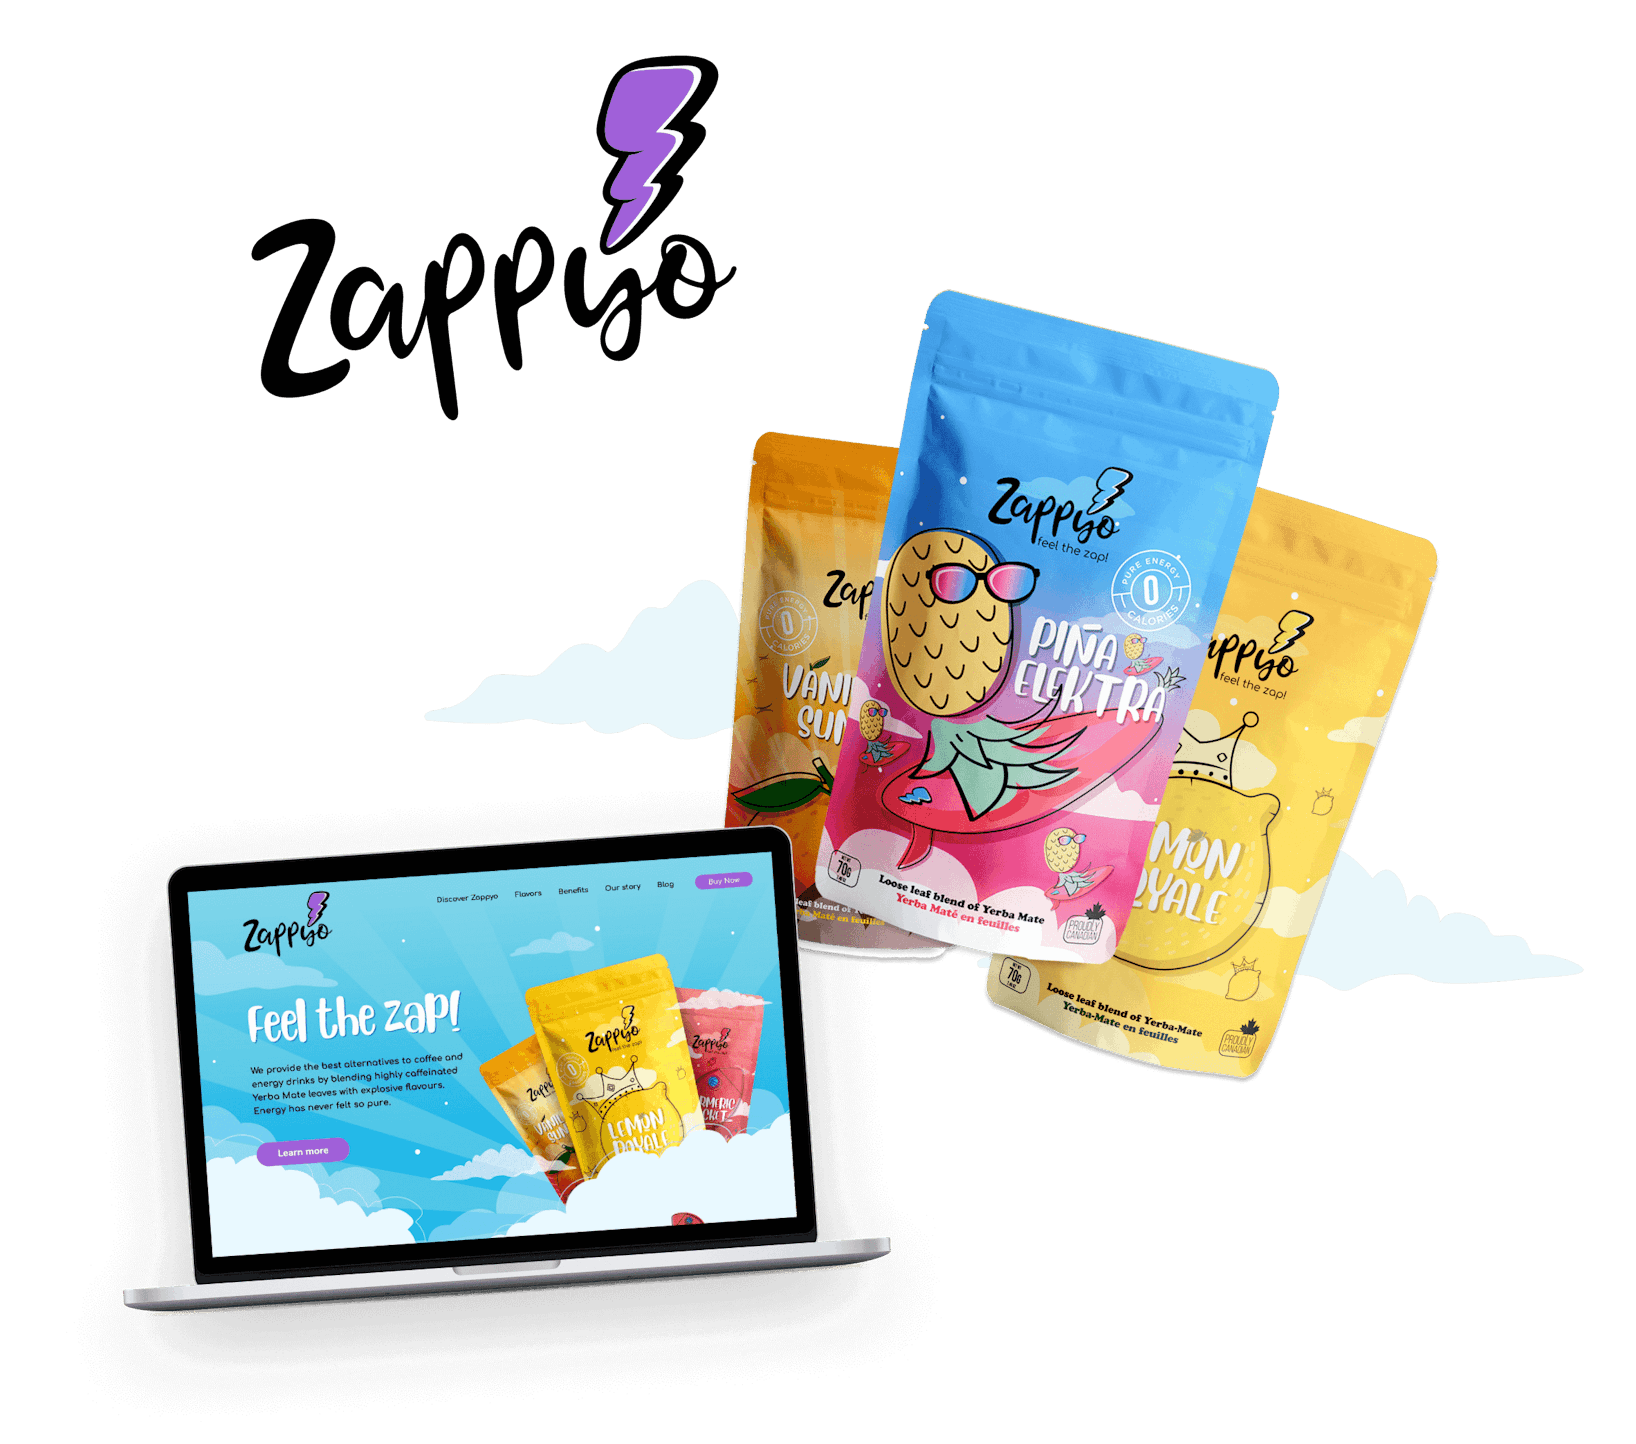 Kleurrijk logo-, verpakking- en websiteontwerp voor drankmerk Zappyo